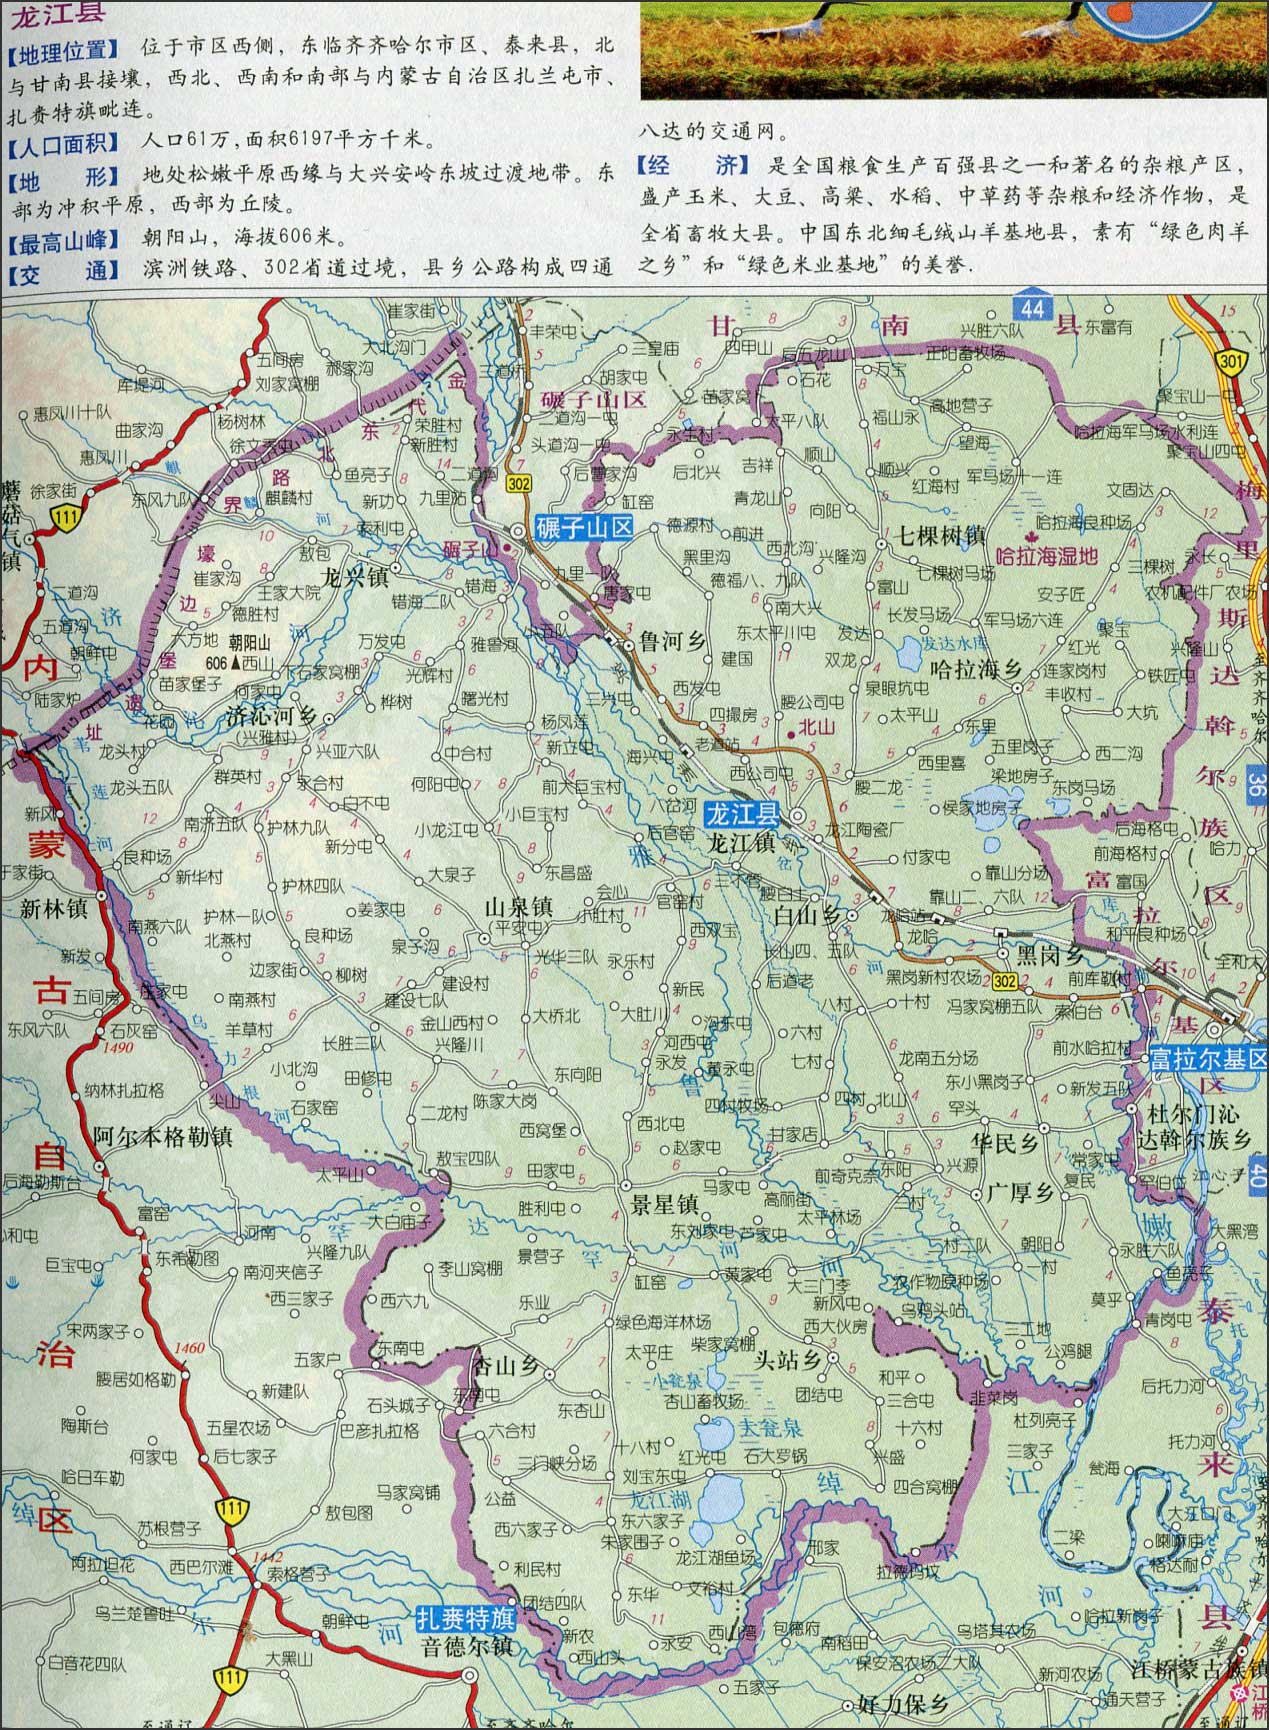 齐齐哈尔  龙江县地图  栏目导航: 哈尔滨  齐齐哈尔  黑河市  